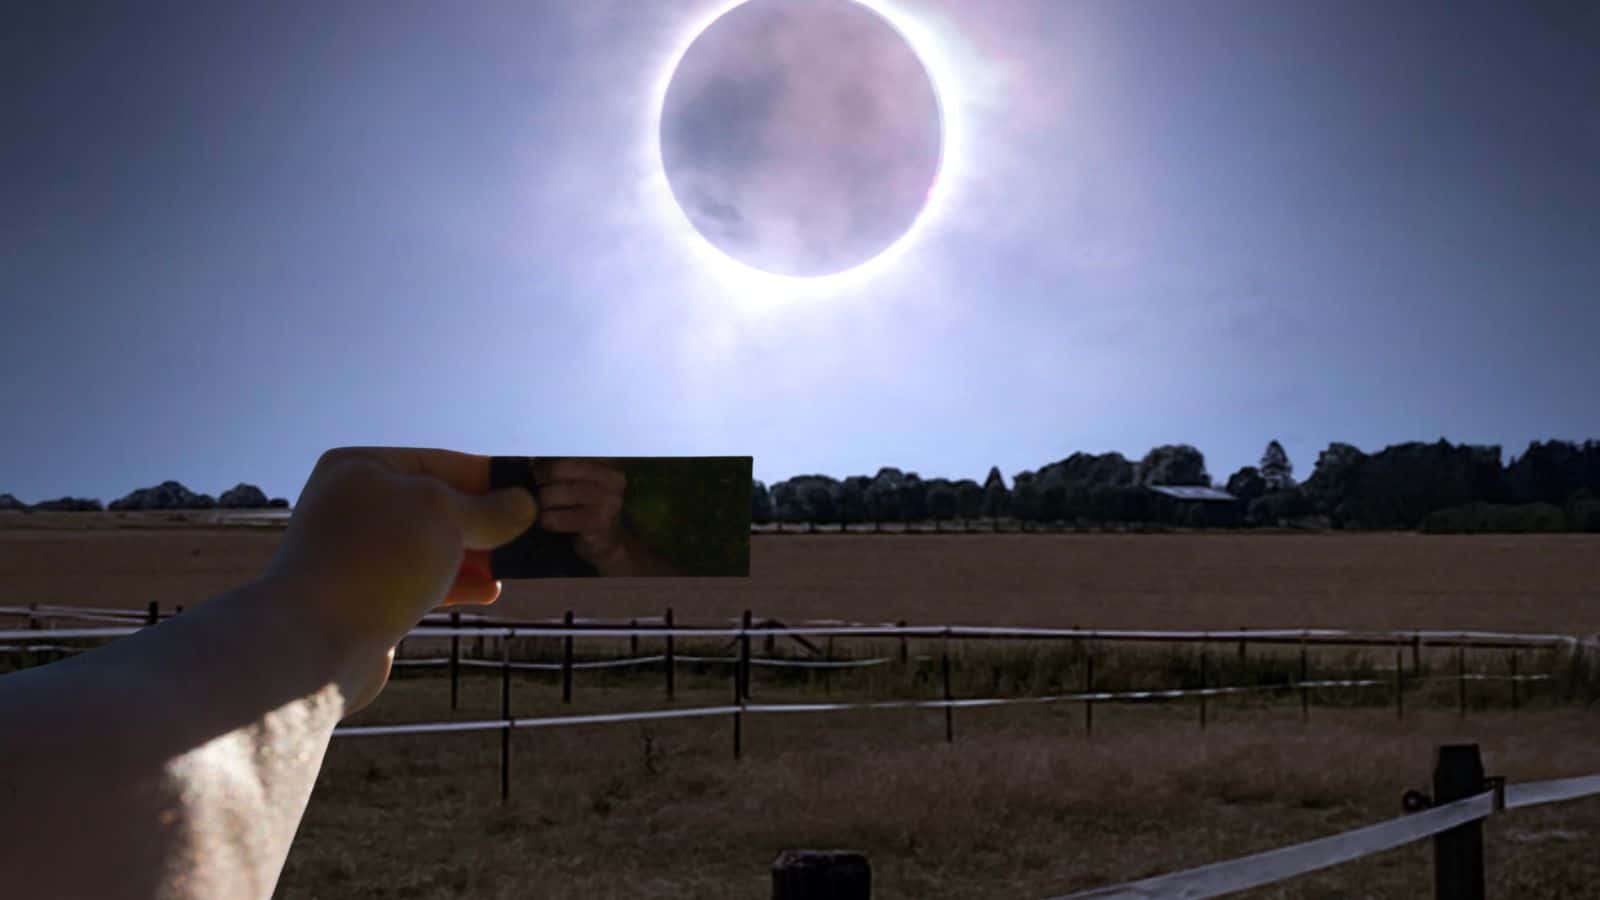 Eclissi solare in arrivo: cosa succede se il cielo è novoloso?